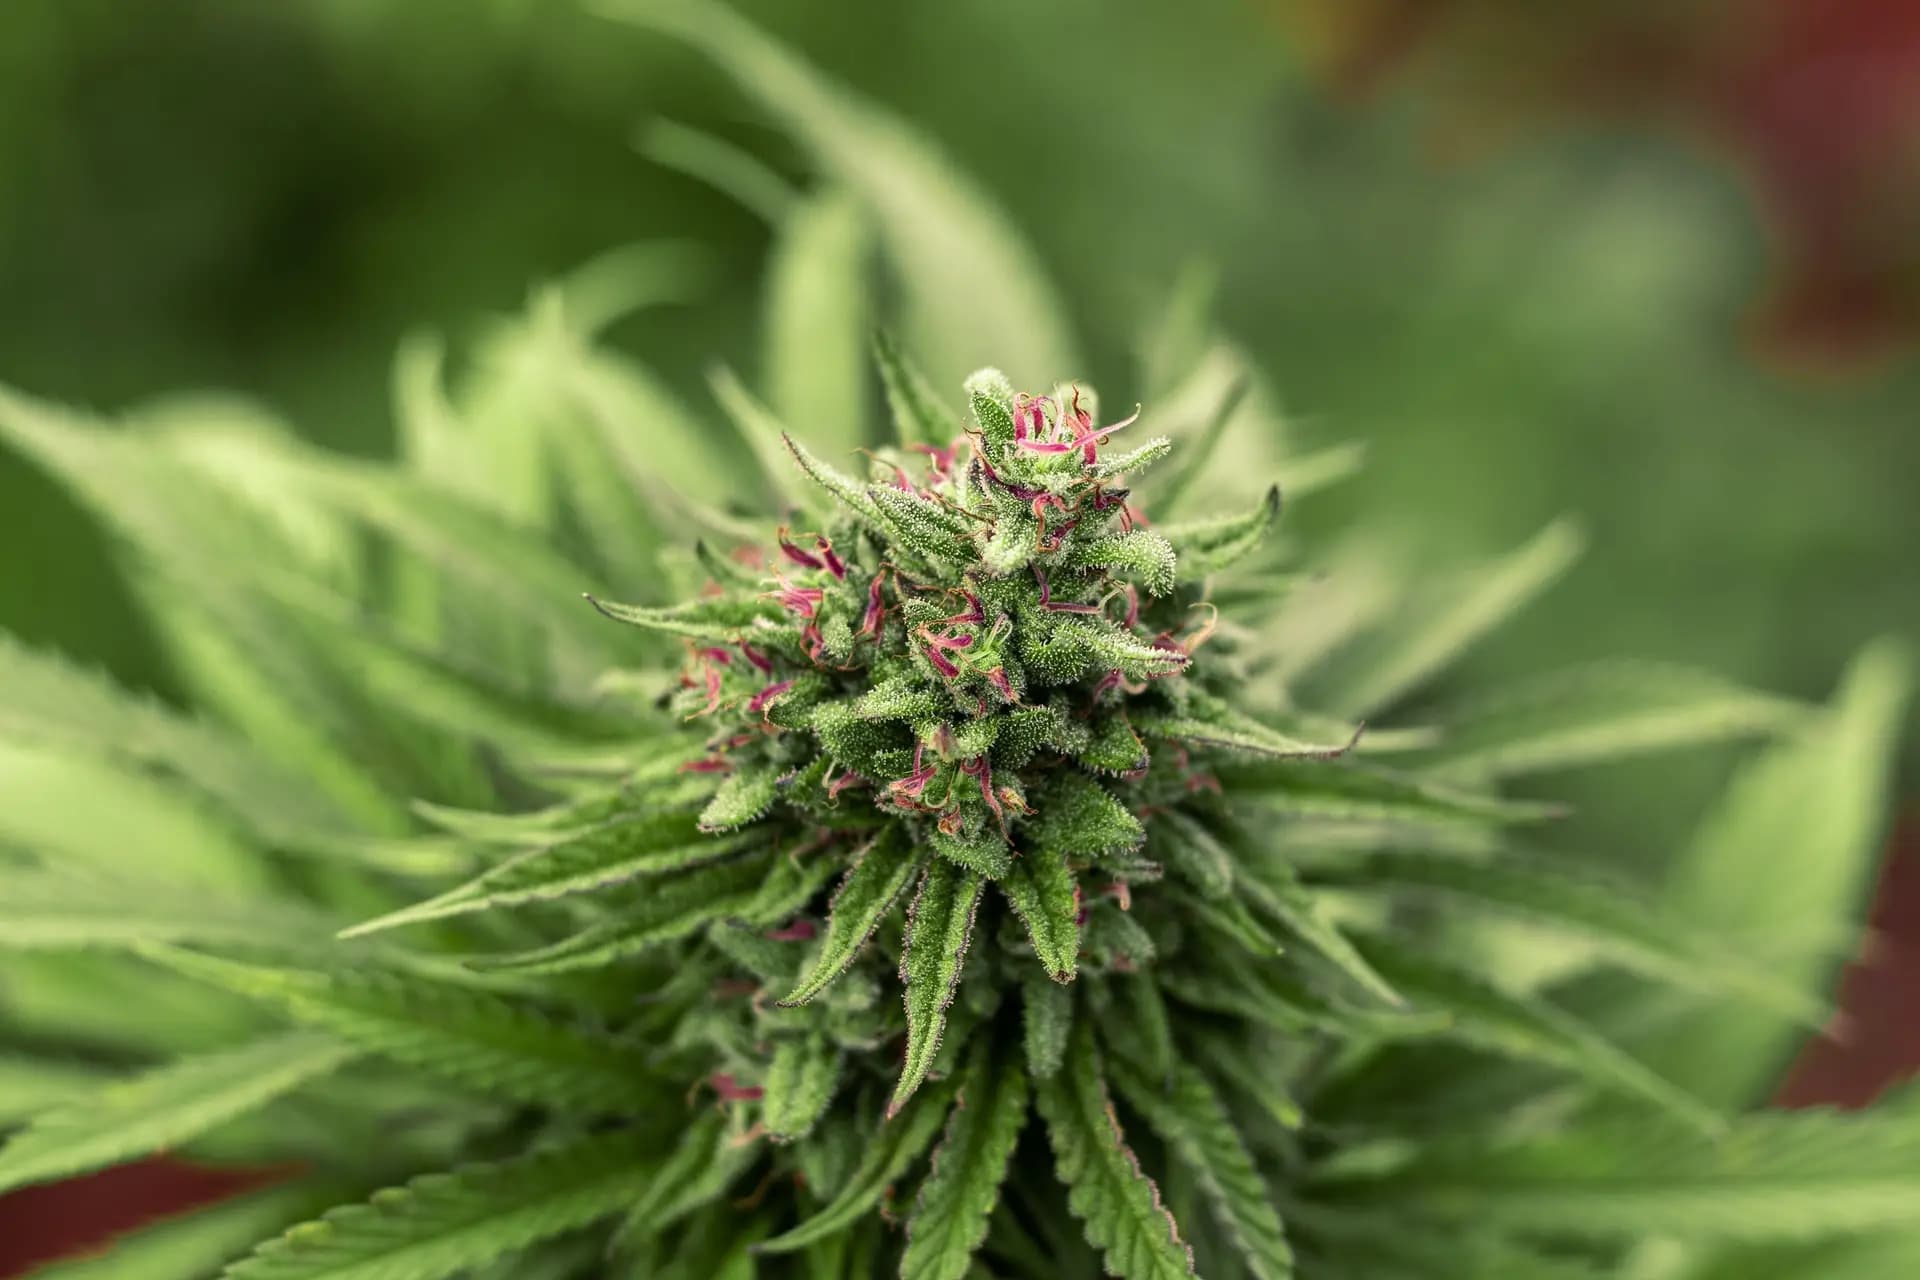 S'il n'est pas fumé, le cannabis légal pourrait être bénéfique - Planete  sante